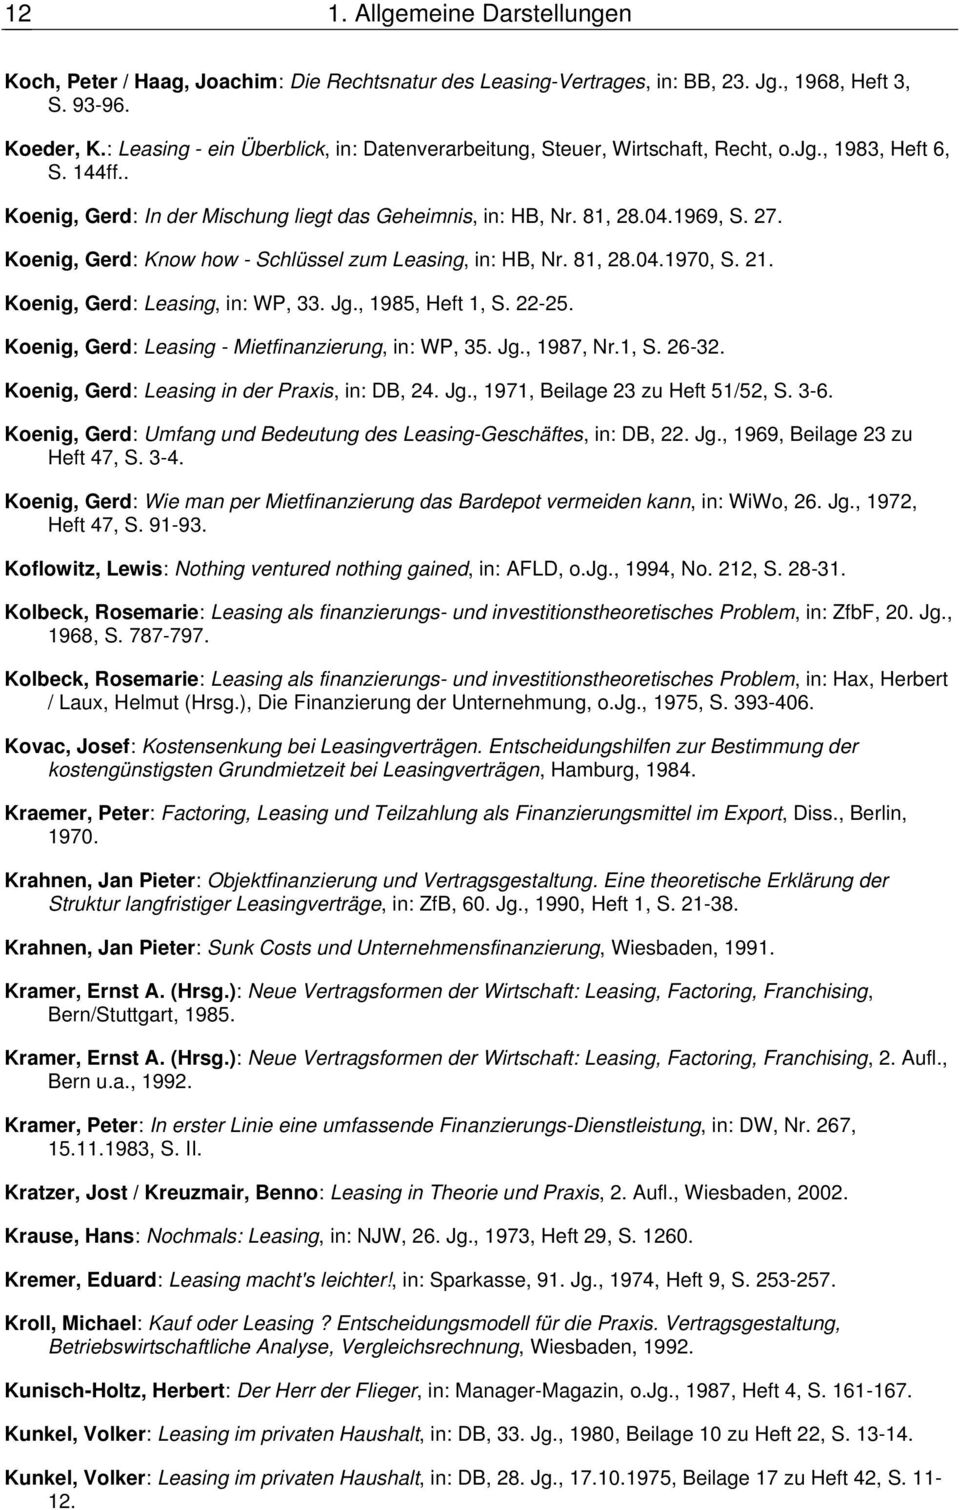 Koenig, Gerd: Know how - Schlüssel zum Leasing, in: HB, Nr. 81, 28.04.1970, S. 21. Koenig, Gerd: Leasing, in: WP, 33. Jg., 1985, Heft 1, S. 22-25. Koenig, Gerd: Leasing - Mietfinanzierung, in: WP, 35.